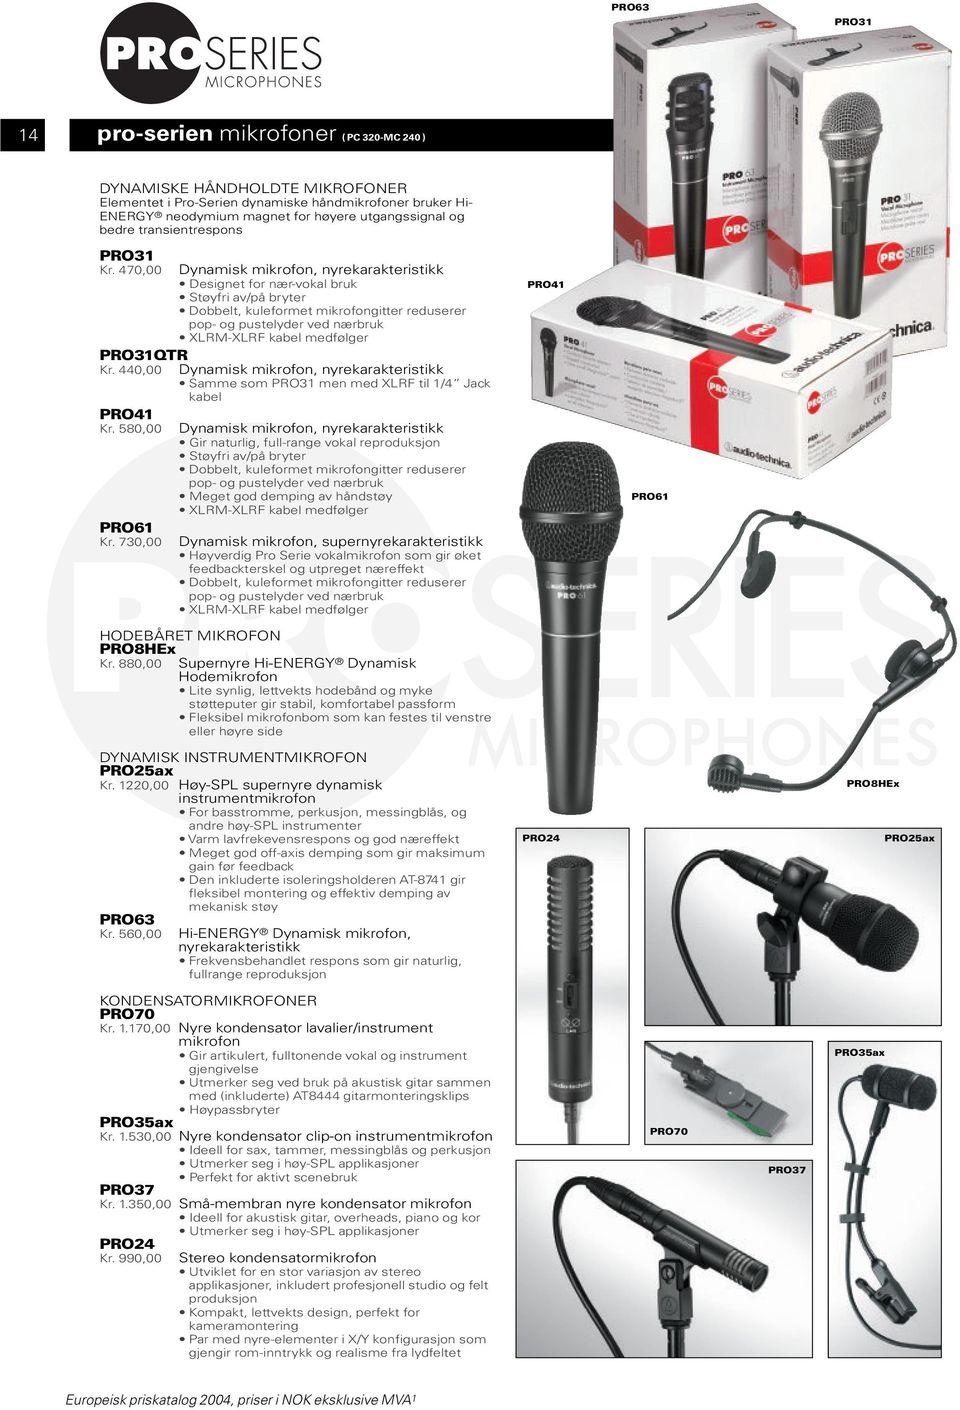 470,00 Dynamisk mikrofon, nyrekarakteristikk Designet for nær-vokal bruk Støyfri av/på bryter Dobbelt, kuleformet mikrofongitter reduserer pop- og pustelyder ved nærbruk XLRM-XLRF kabel medfølger